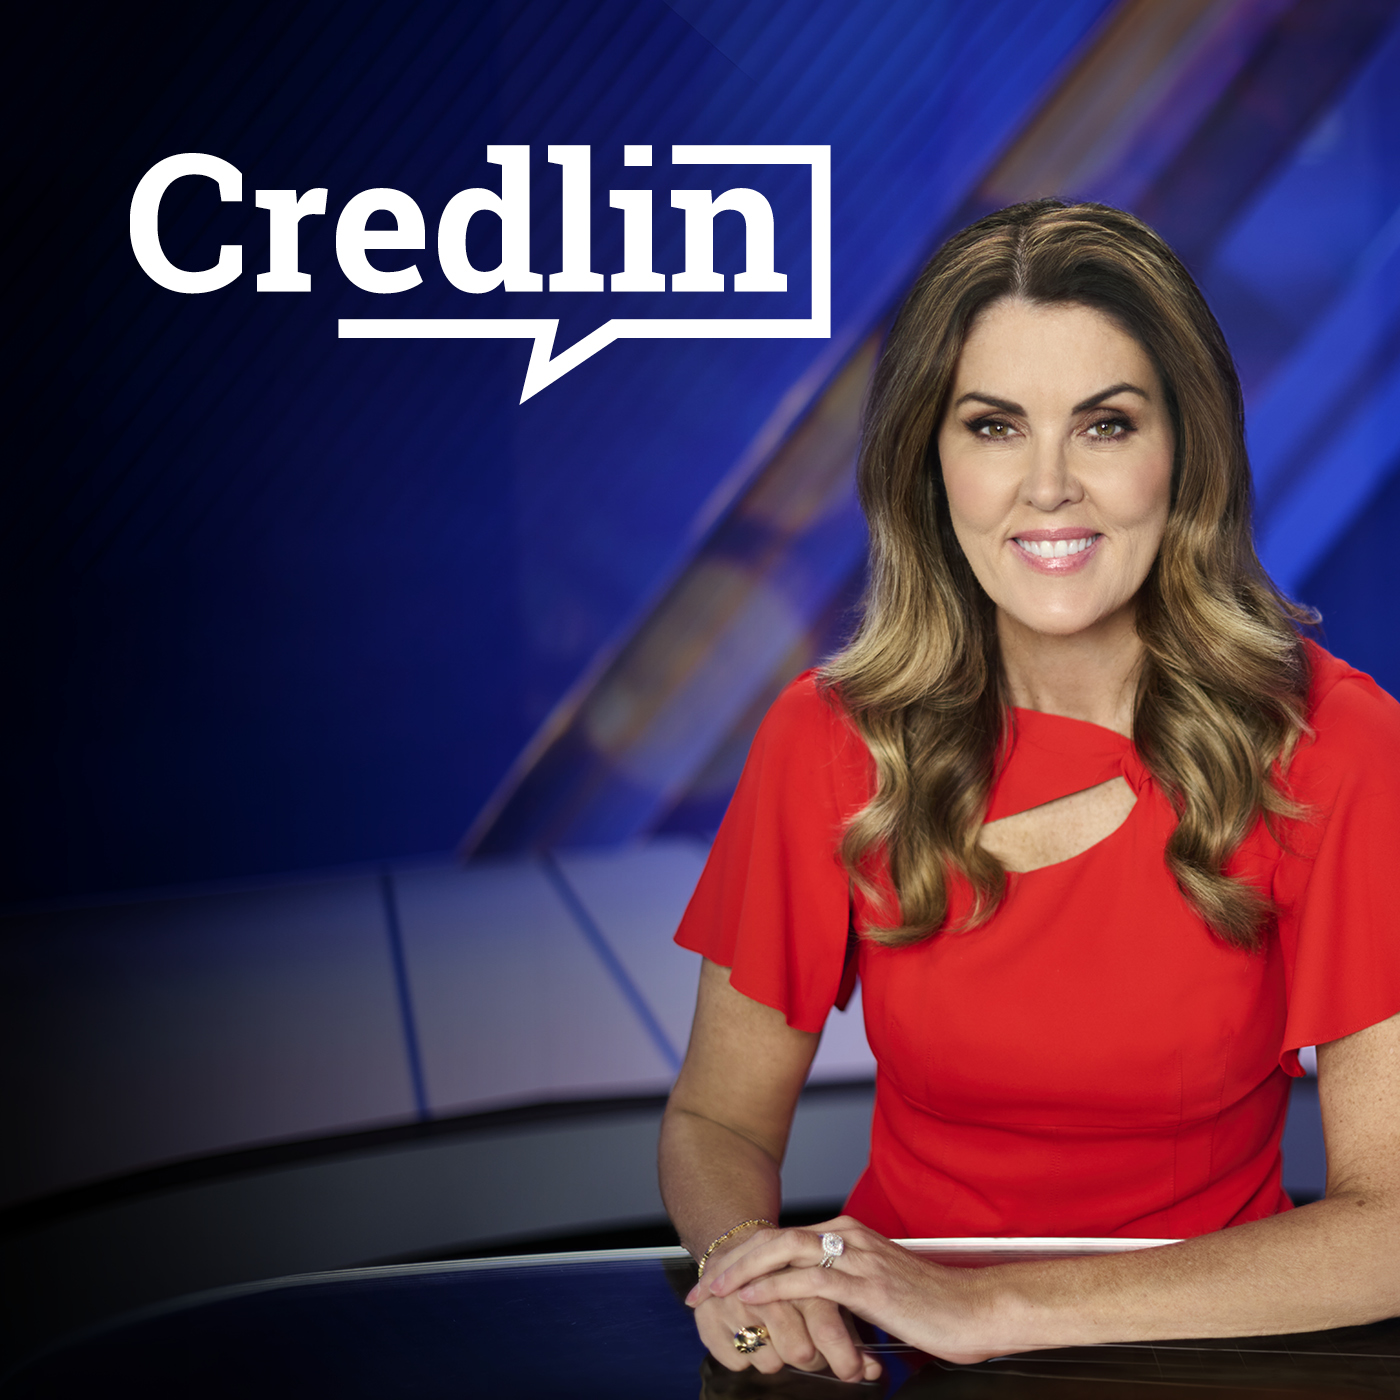 Credlin, Friday 23 October